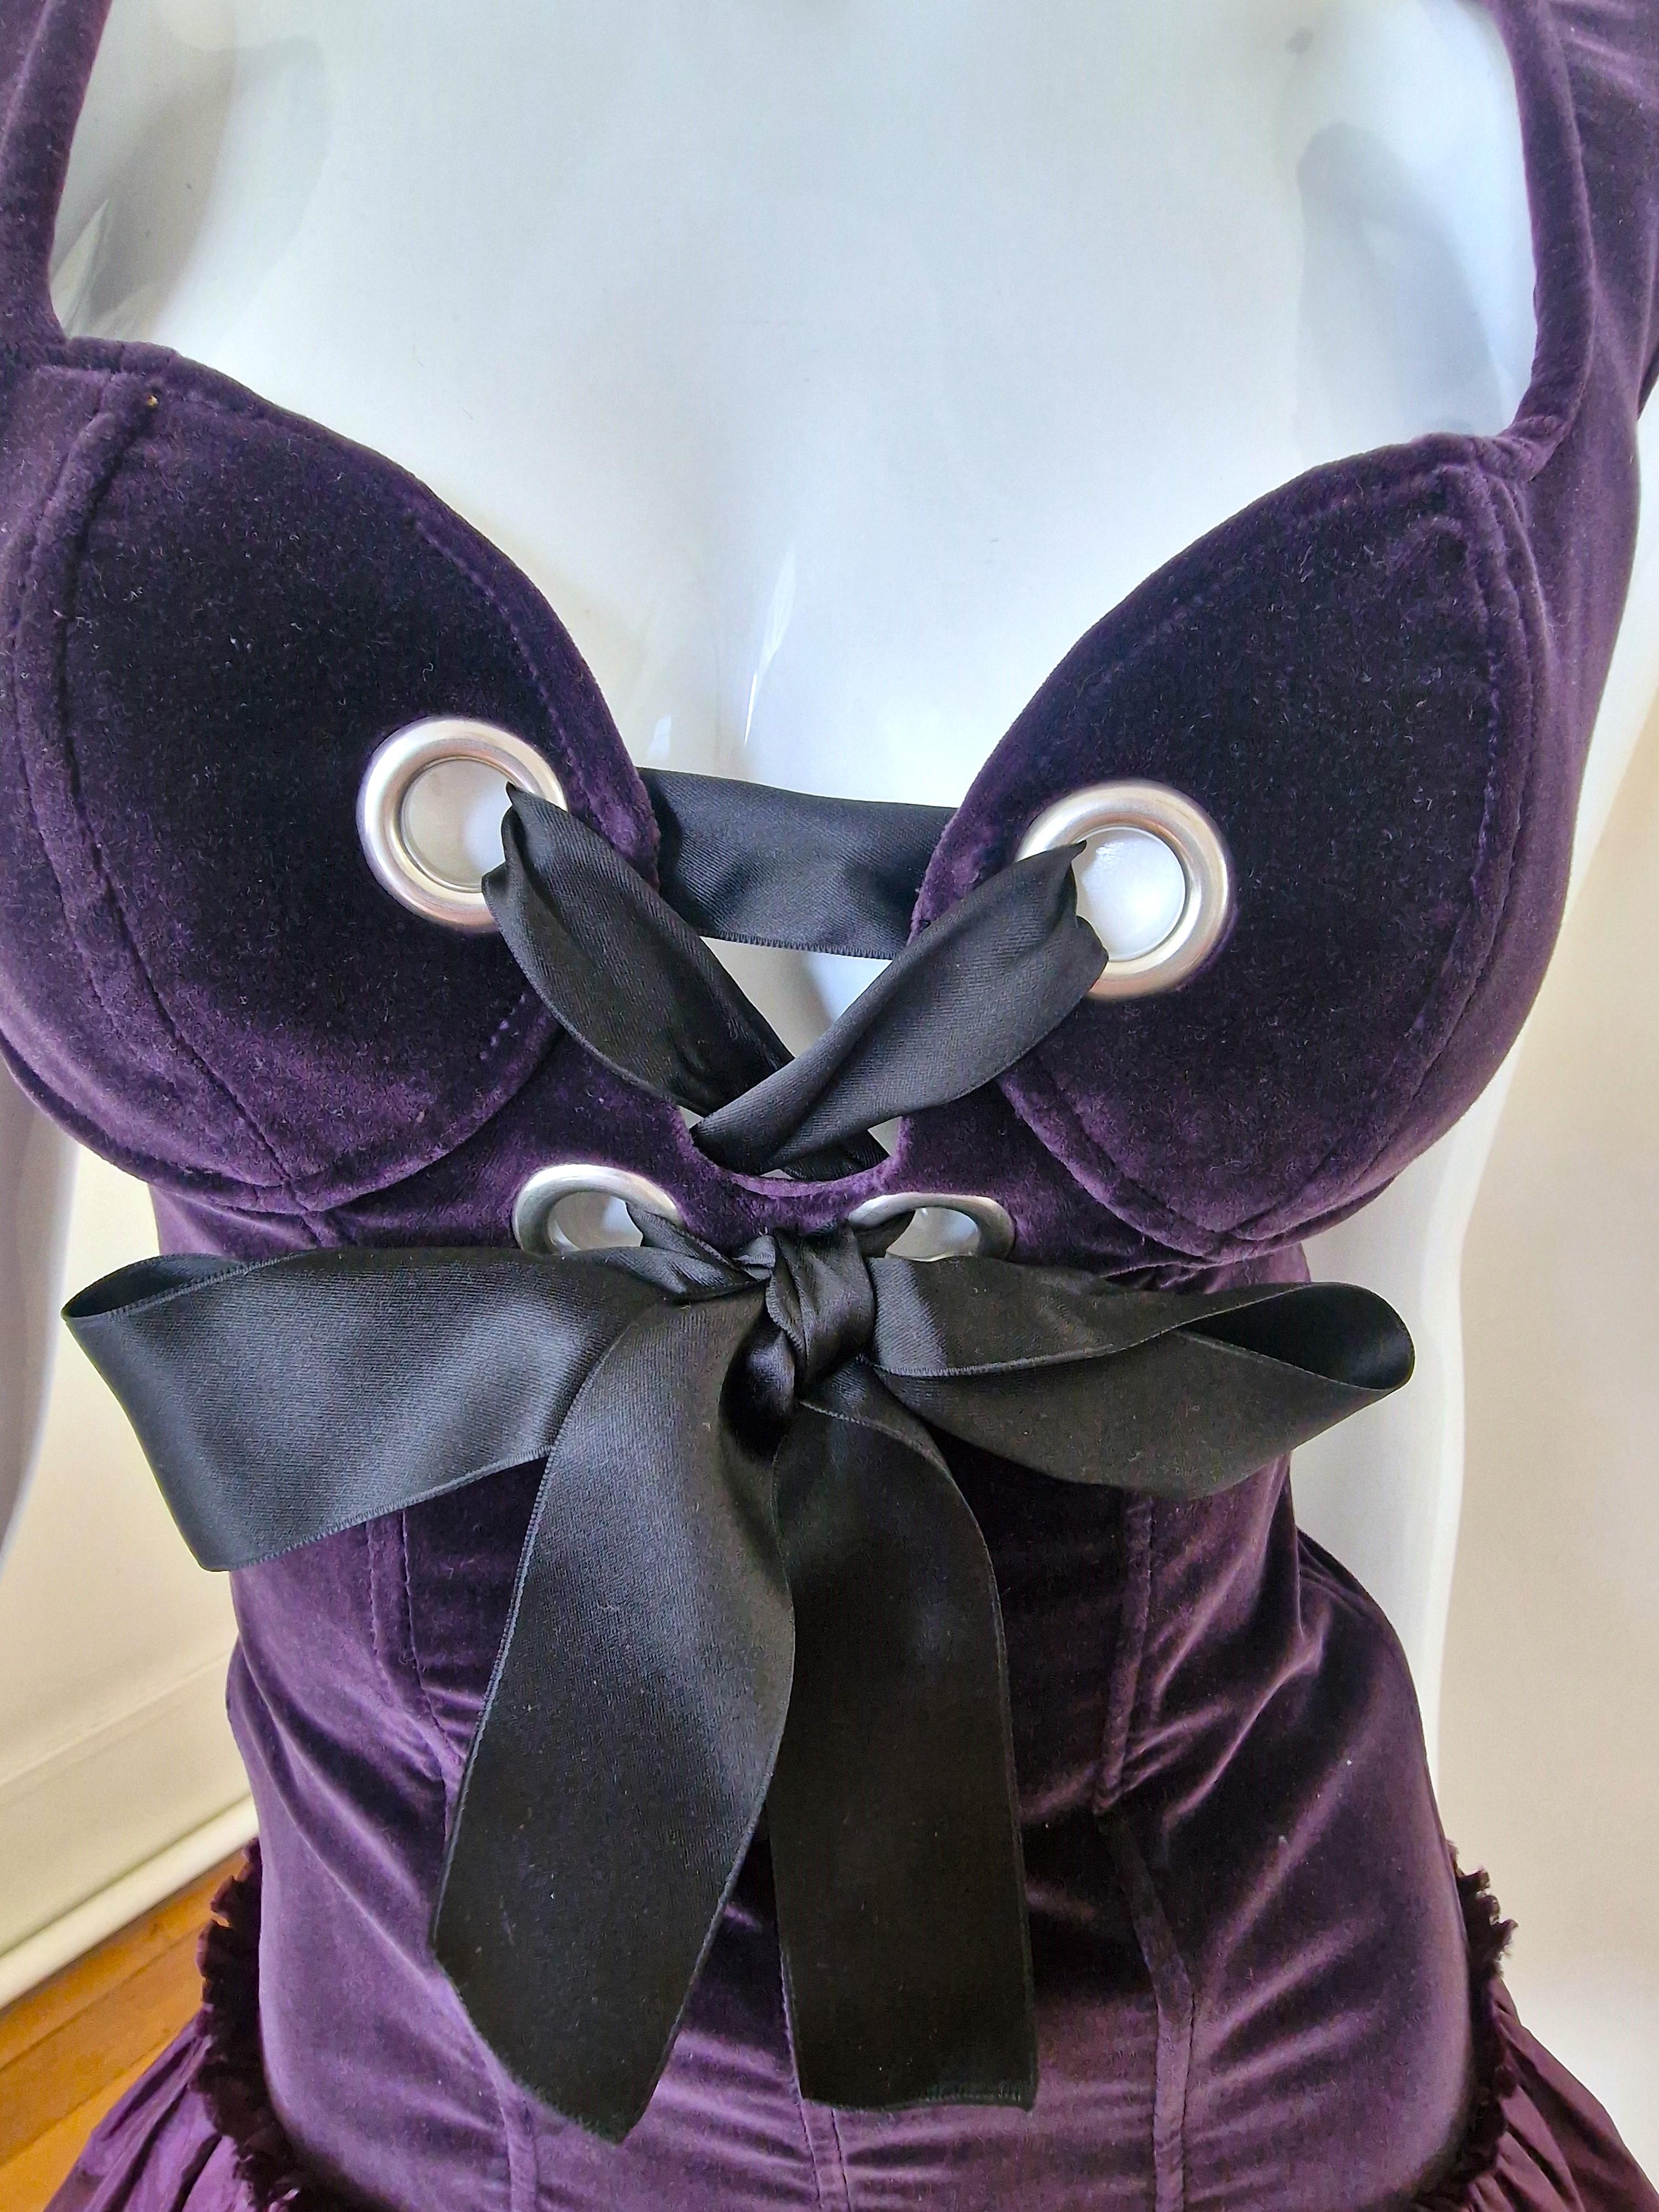 Alexander McQueen Corset Bustier Lace Up Tutu Petticoat Violet Medium Gown Dress For Sale 6